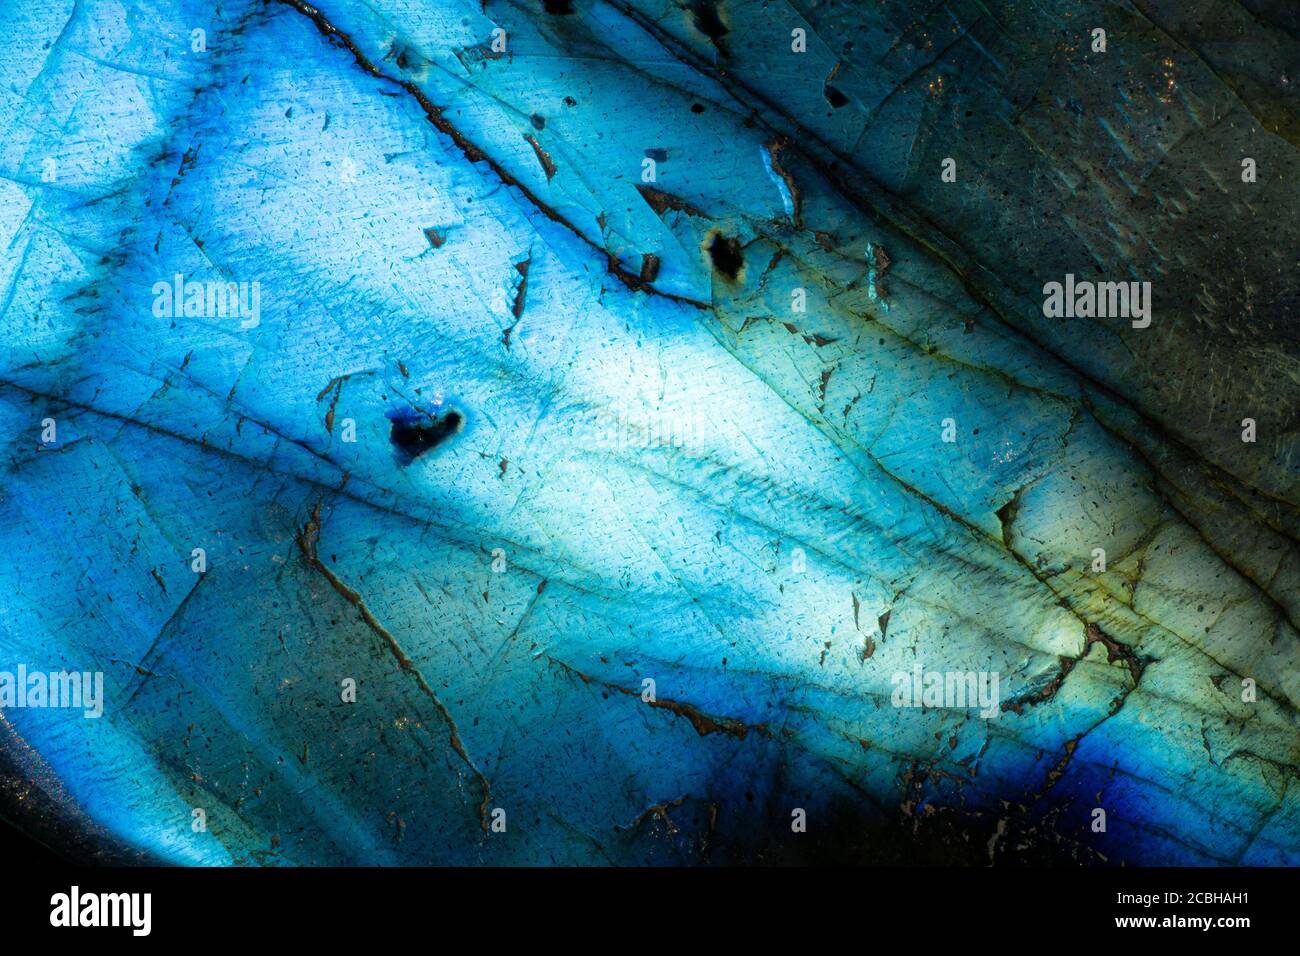 Foto macro estrema di una pietra labradorite blu illuminata. Ho usato l'illuminazione speciale per mettere in luce le texture cracked e i colori vibranti. Foto Stock